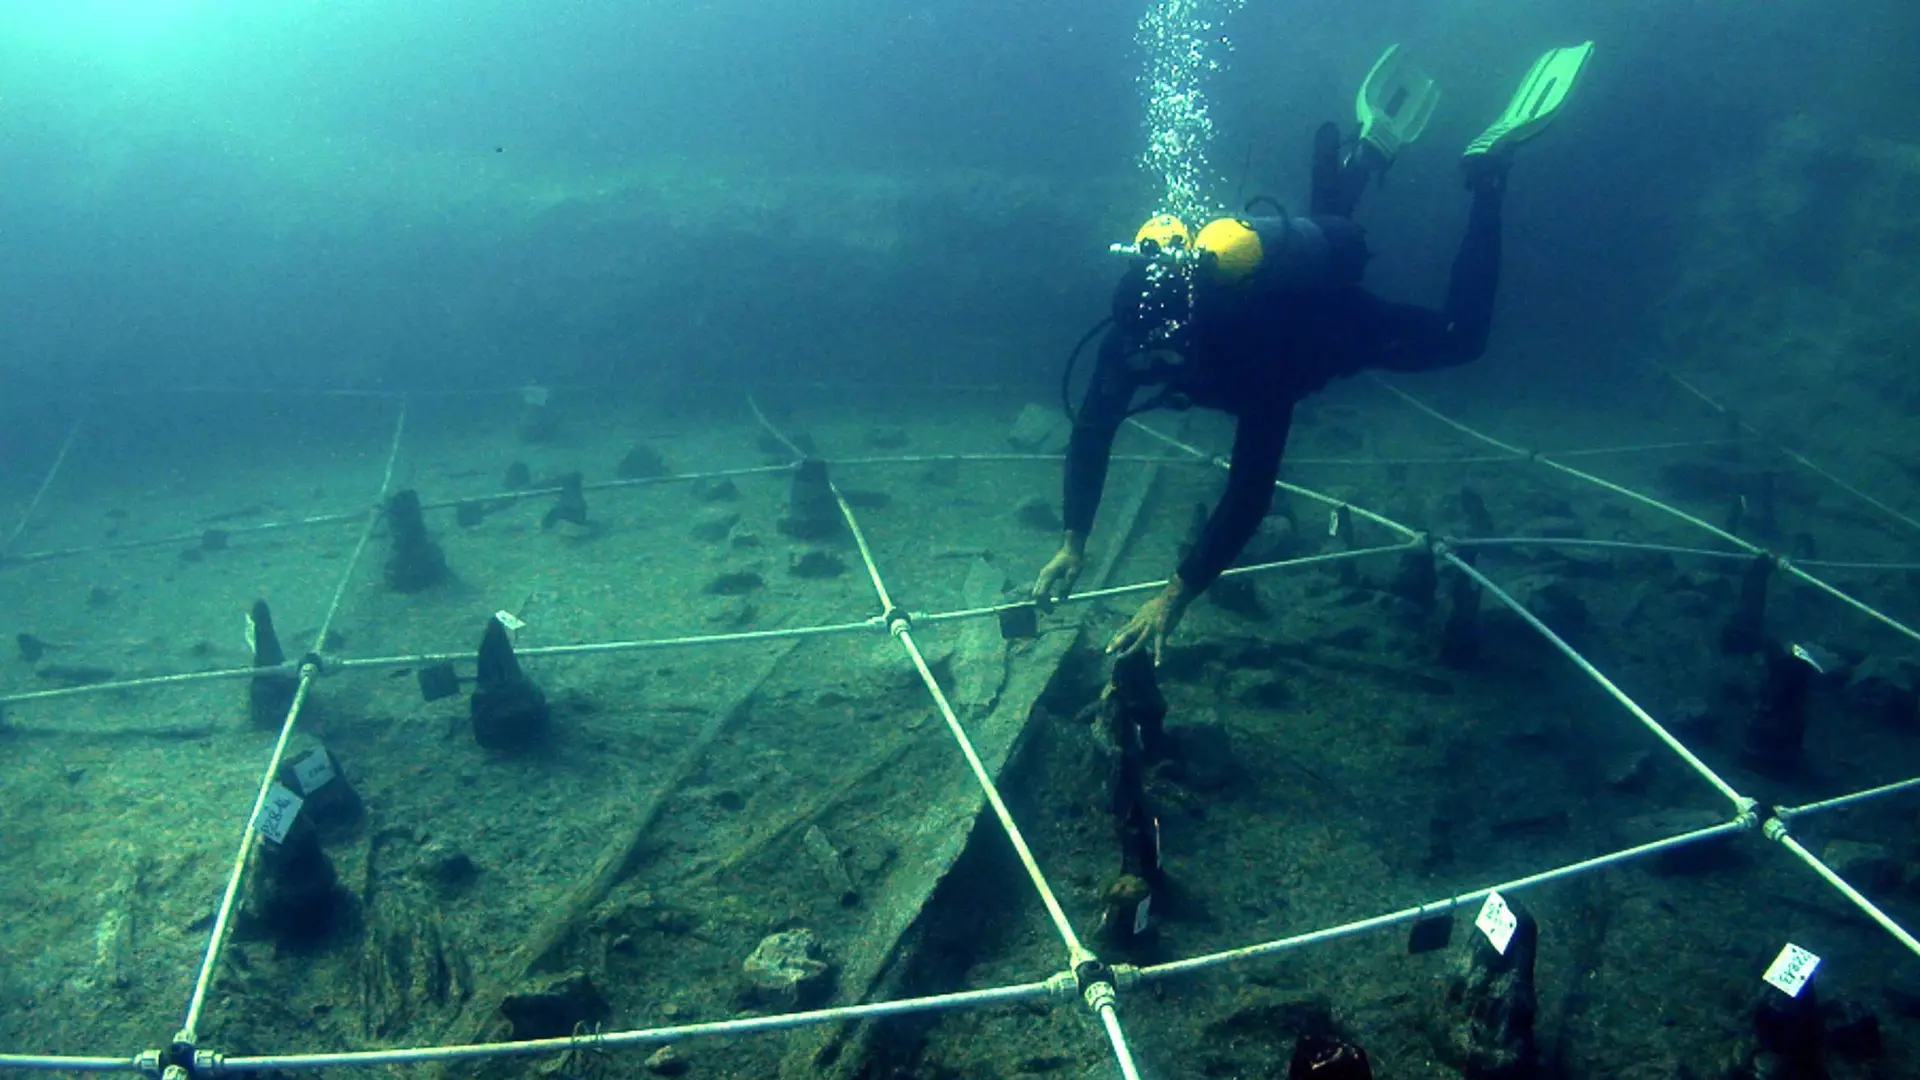 La investigación descubre barcos tecnológicamente avanzados utilizados hace más de 7.000 años en el Mediterráneo, lo que sugiere un profundo conocimiento de la construcción de barcos y posibles vías para futuros descubrimientos arqueológicos. Exploración de Canoa 5